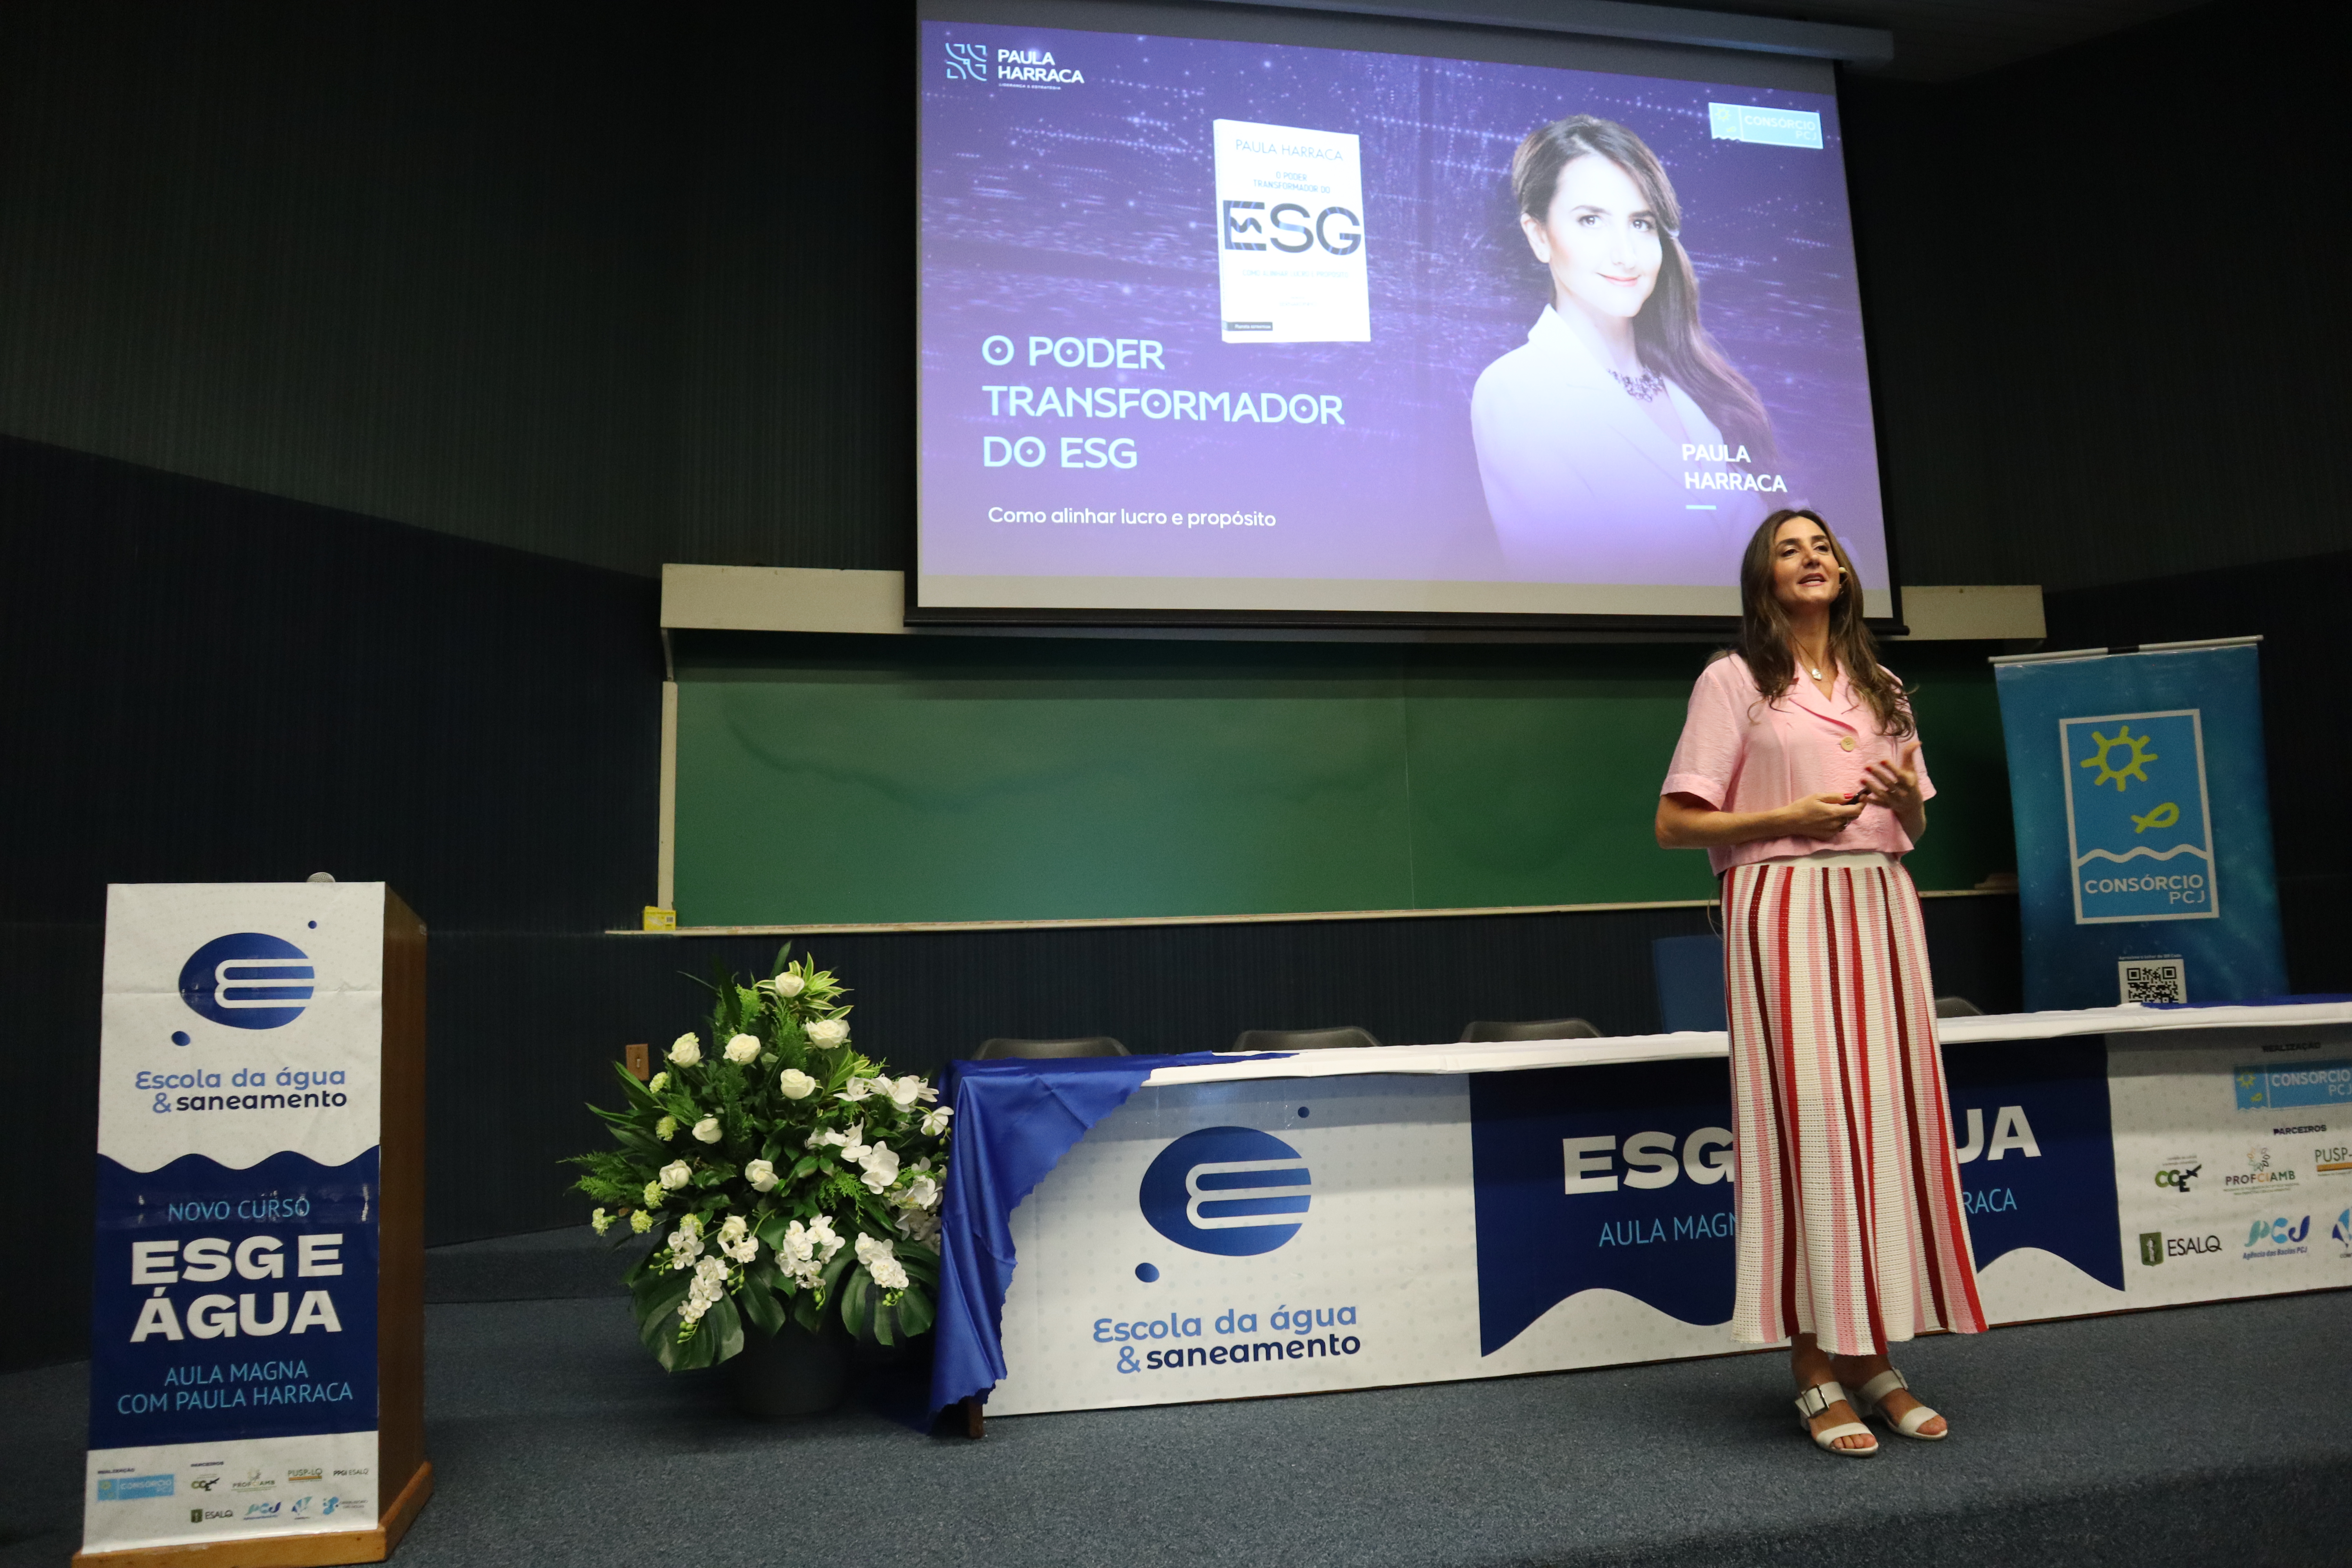 Escola da Água e Saneamento lança curso sobre “ESG e Água” em aula magna com Paula Harraca